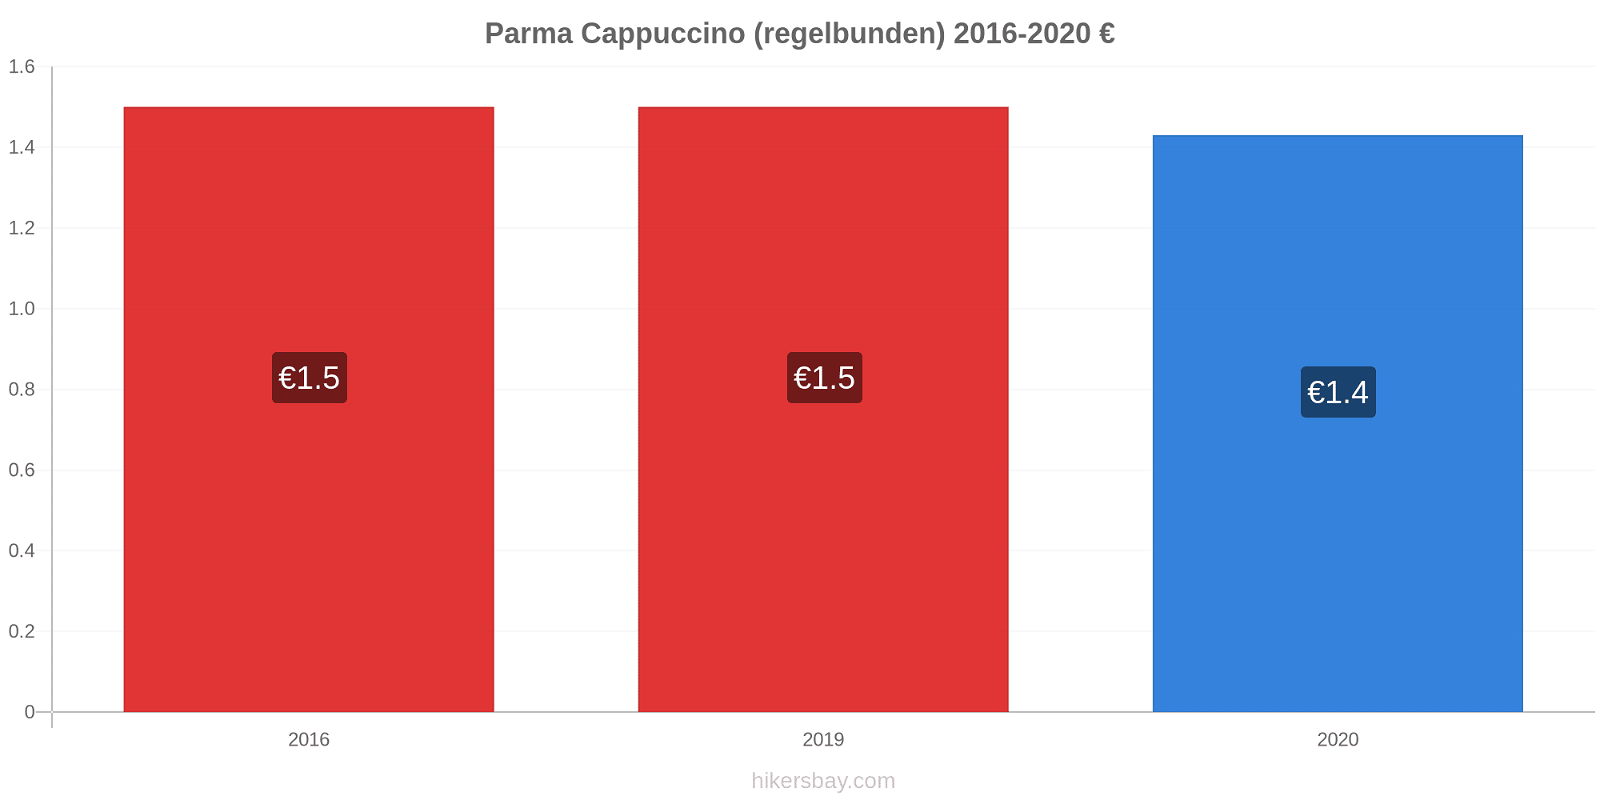 Parma prisförändringar Cappuccino (regelbunden) hikersbay.com